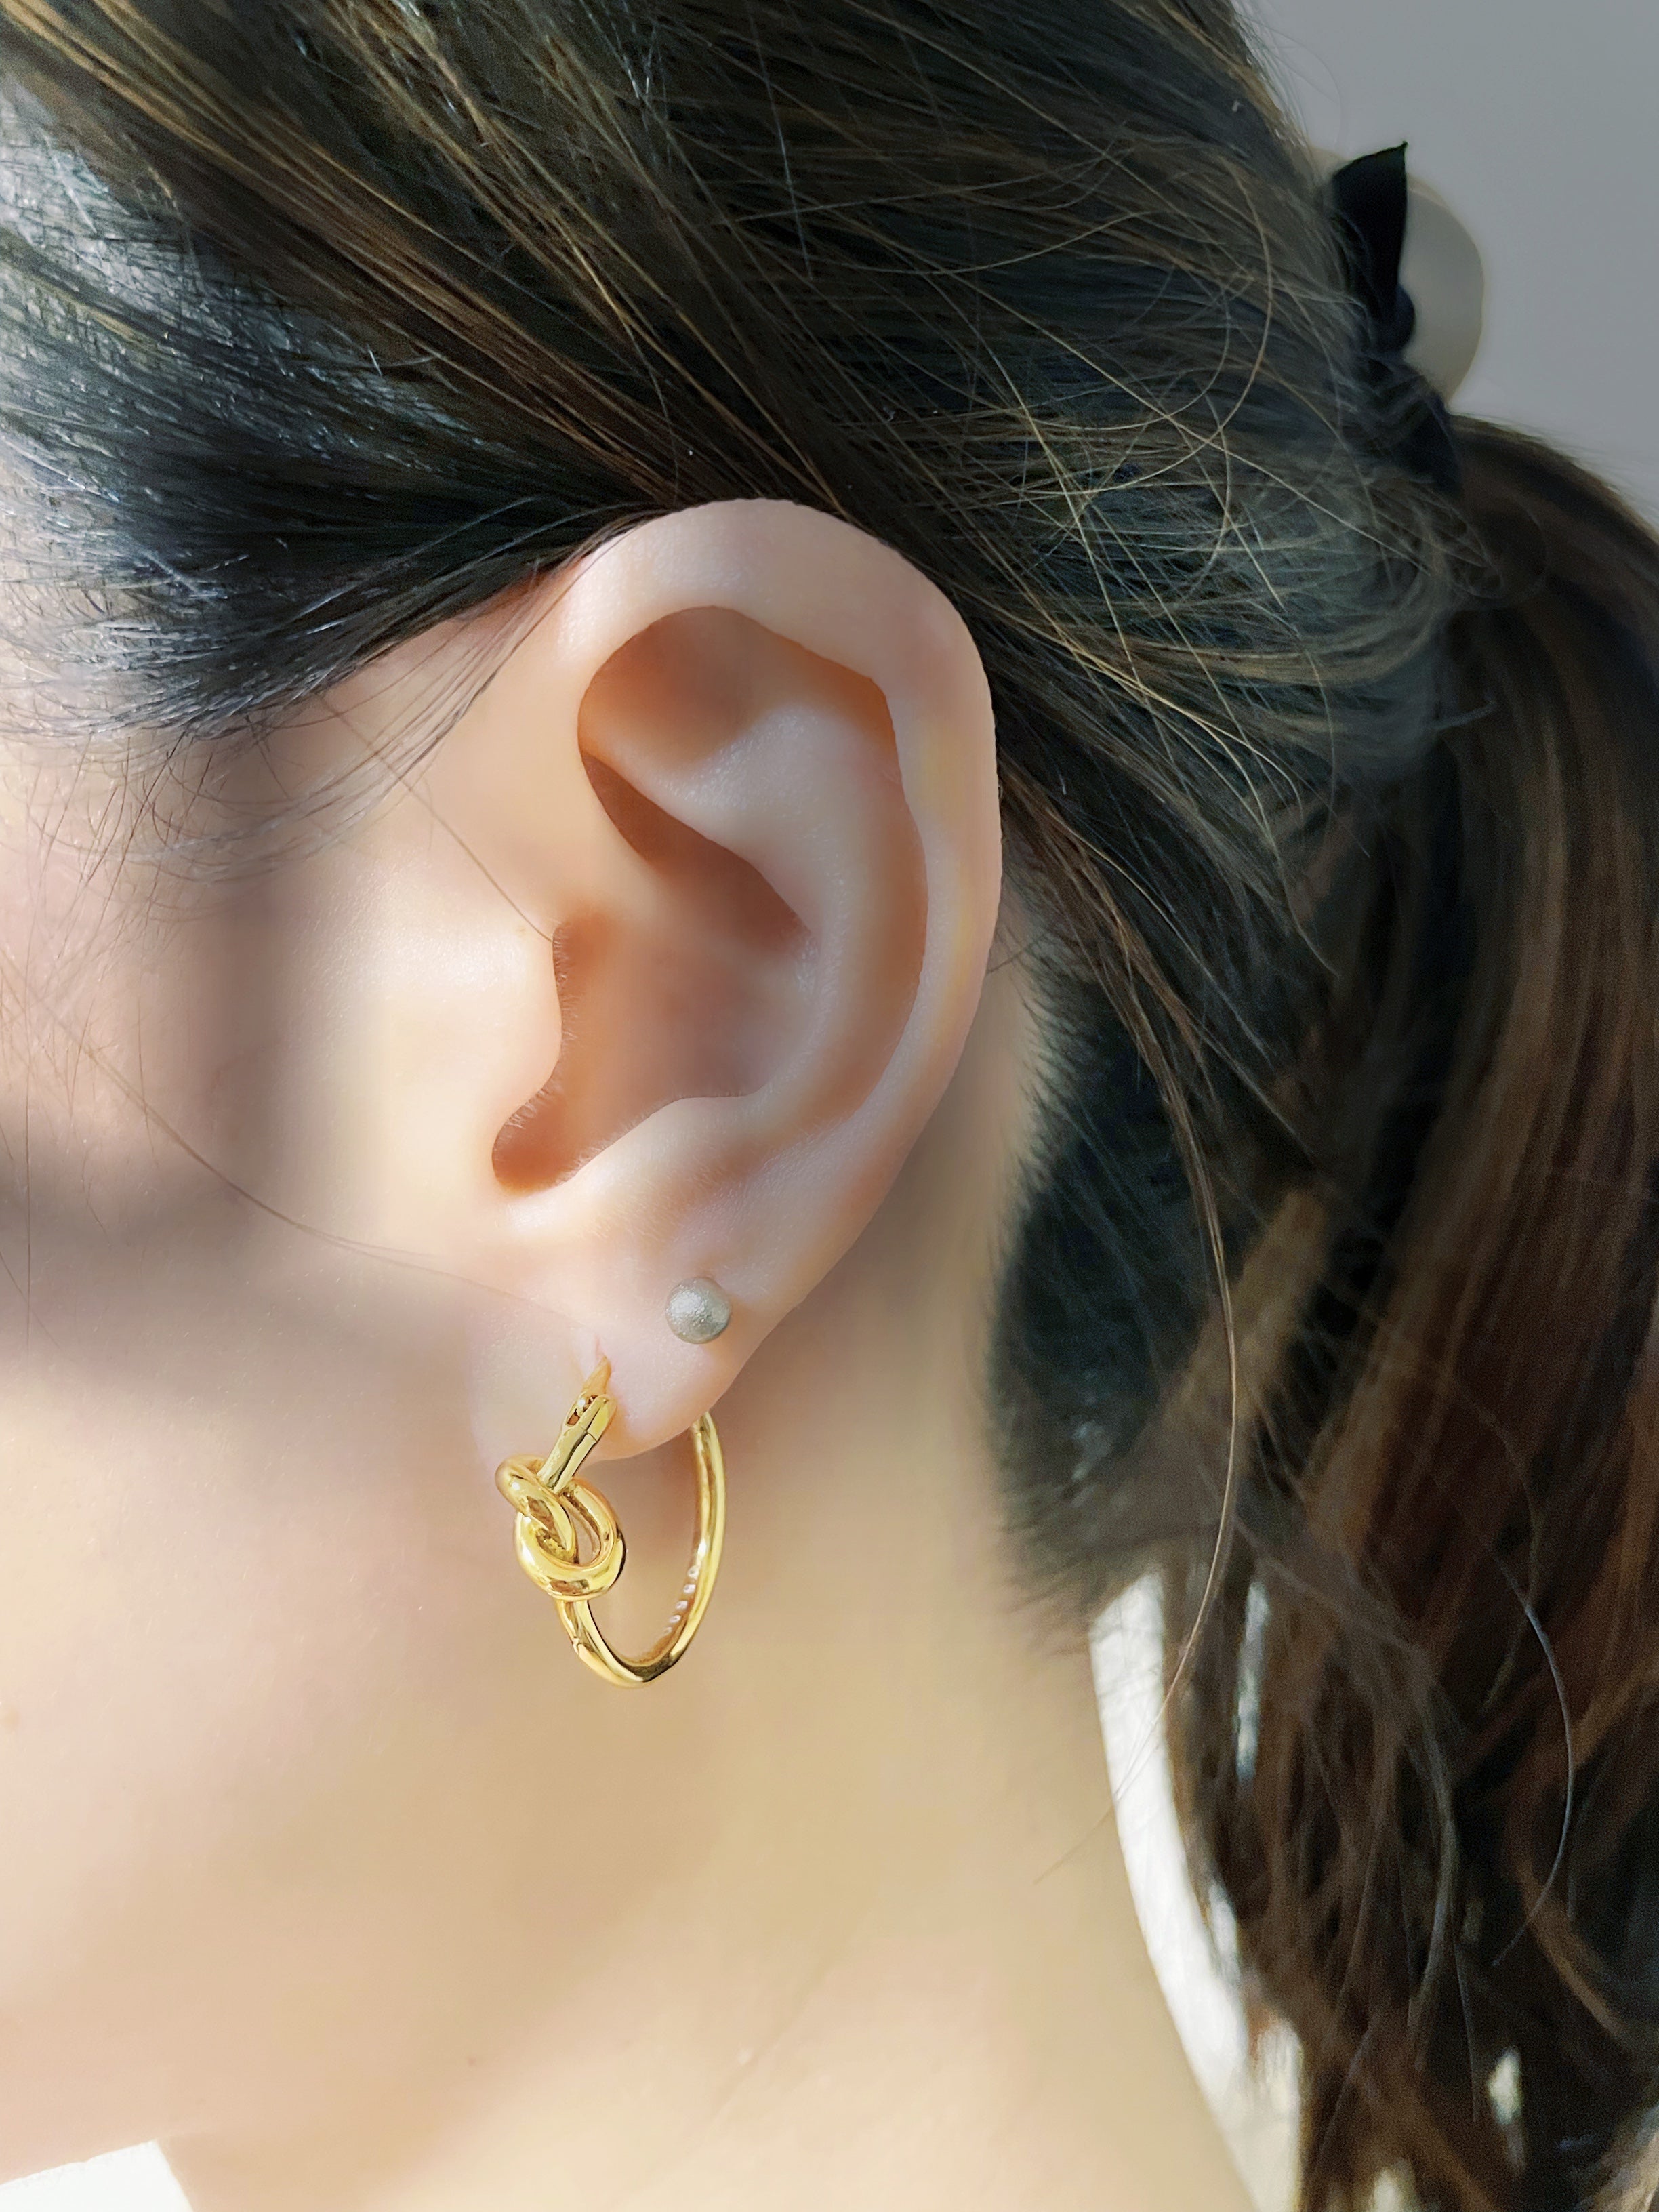 Classic Knot Hoop Earrings - accessorous hoop earrings